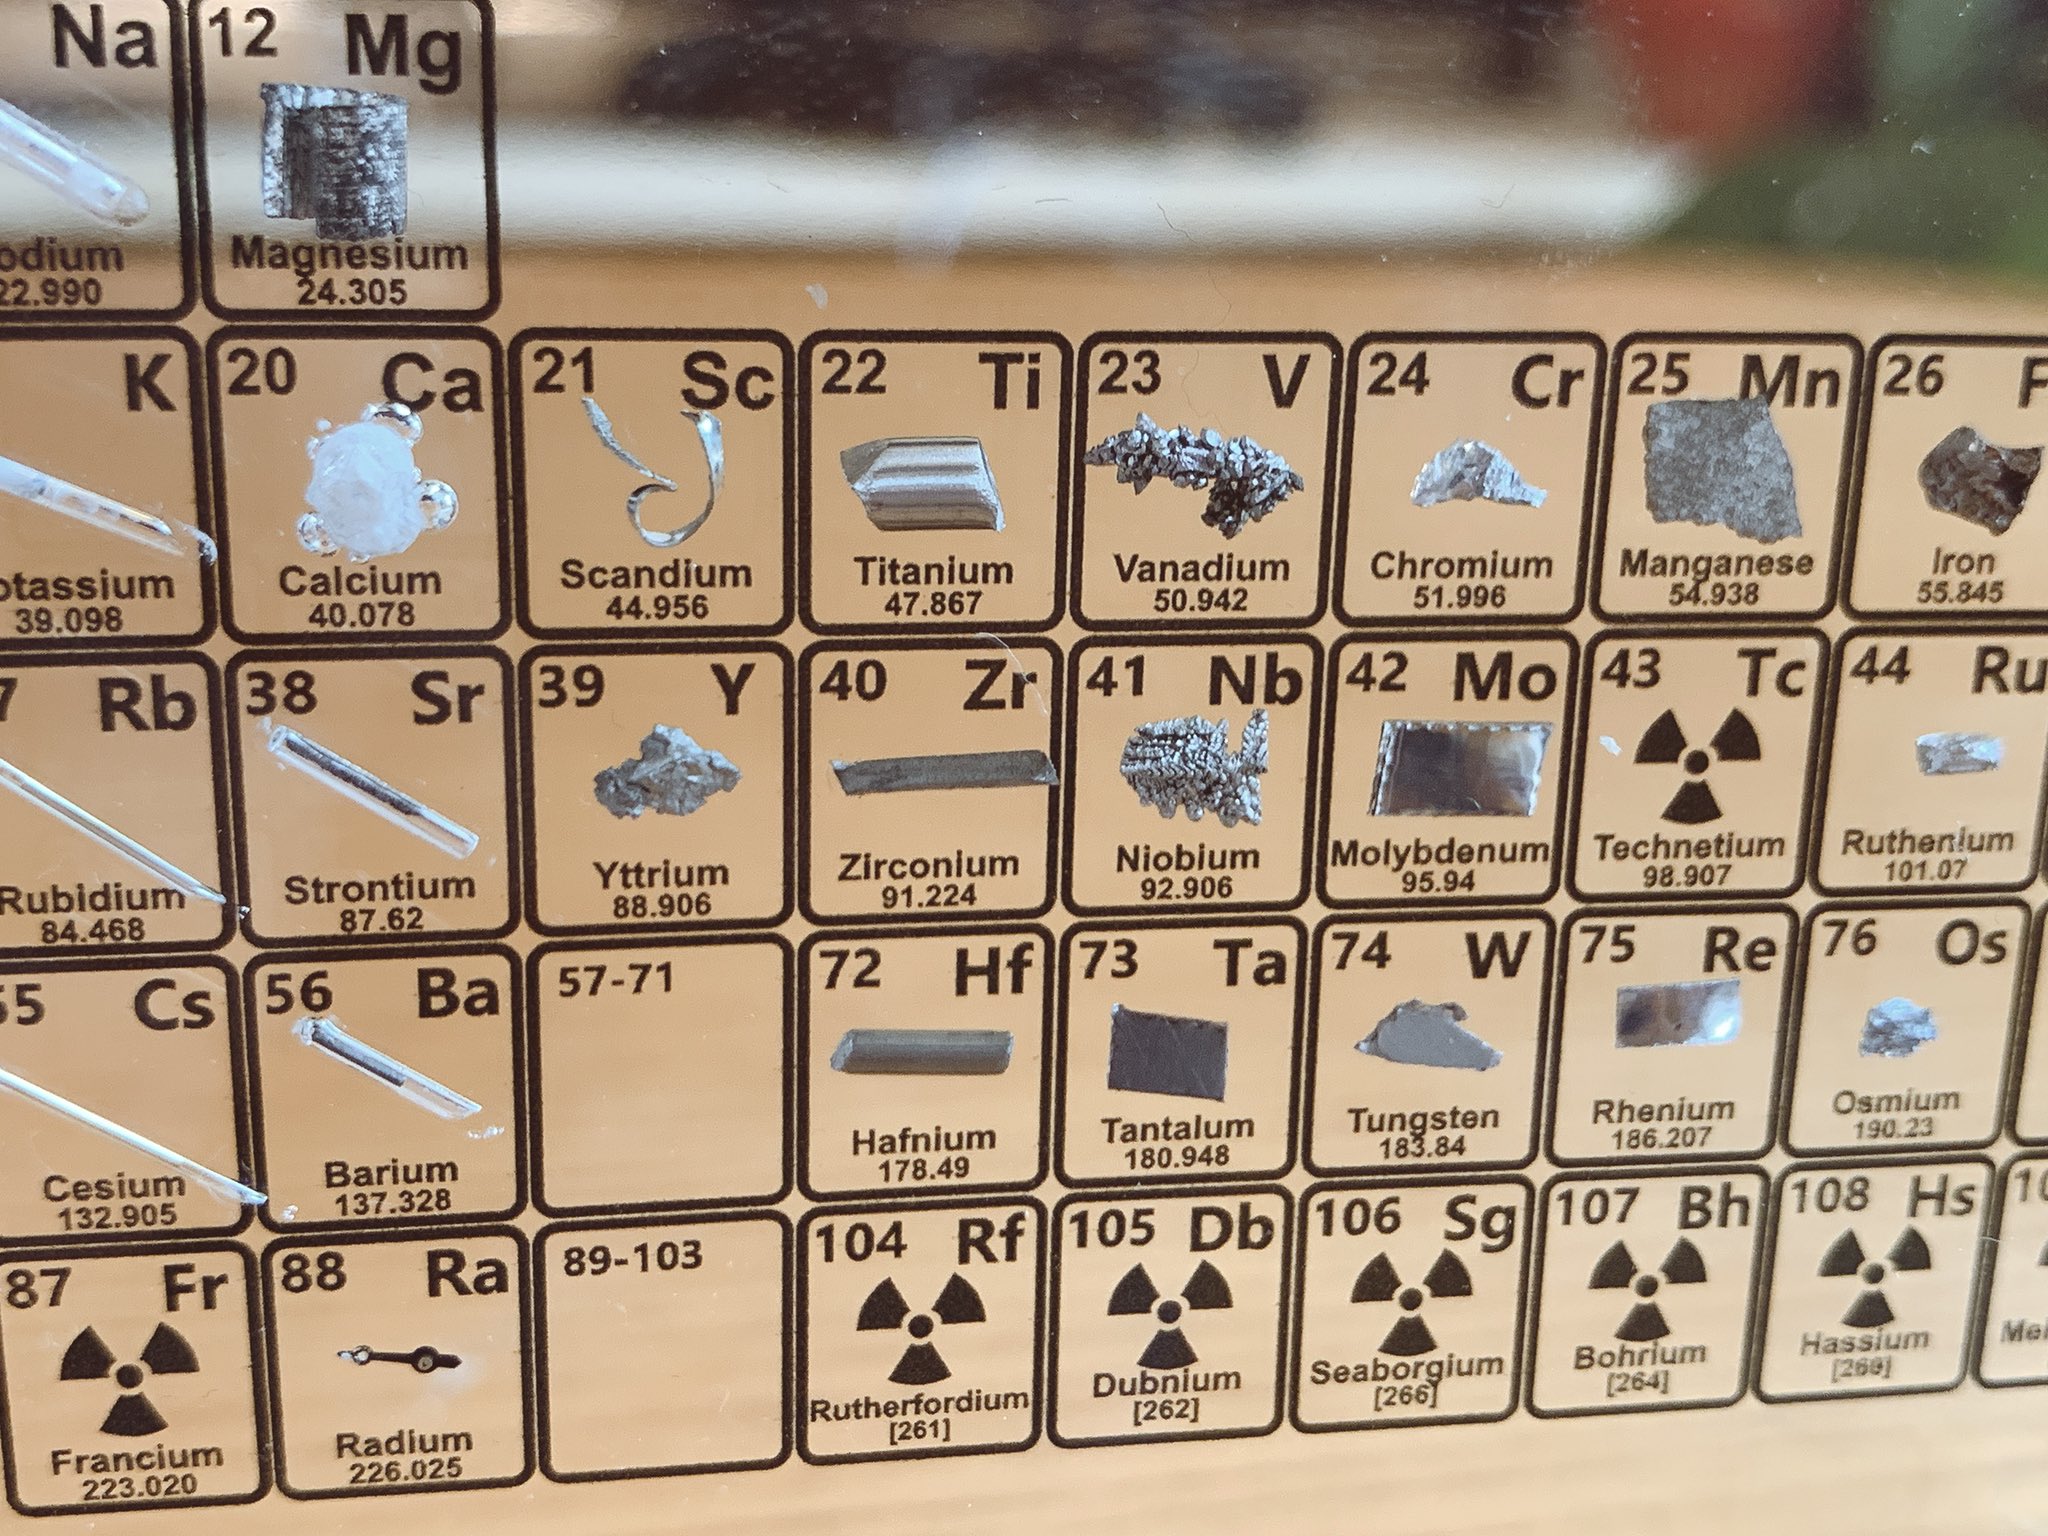 タンサンあさと 注文していたheritageの実物元素周期表が届いた 118の元素 のうち 85の実際のサンプルが収録されている ヤバい放射線物質以外は大体入ってる 放射線物質のラジウムは昔の時計の針を使用しているみたい いろんな元素を所有しているという